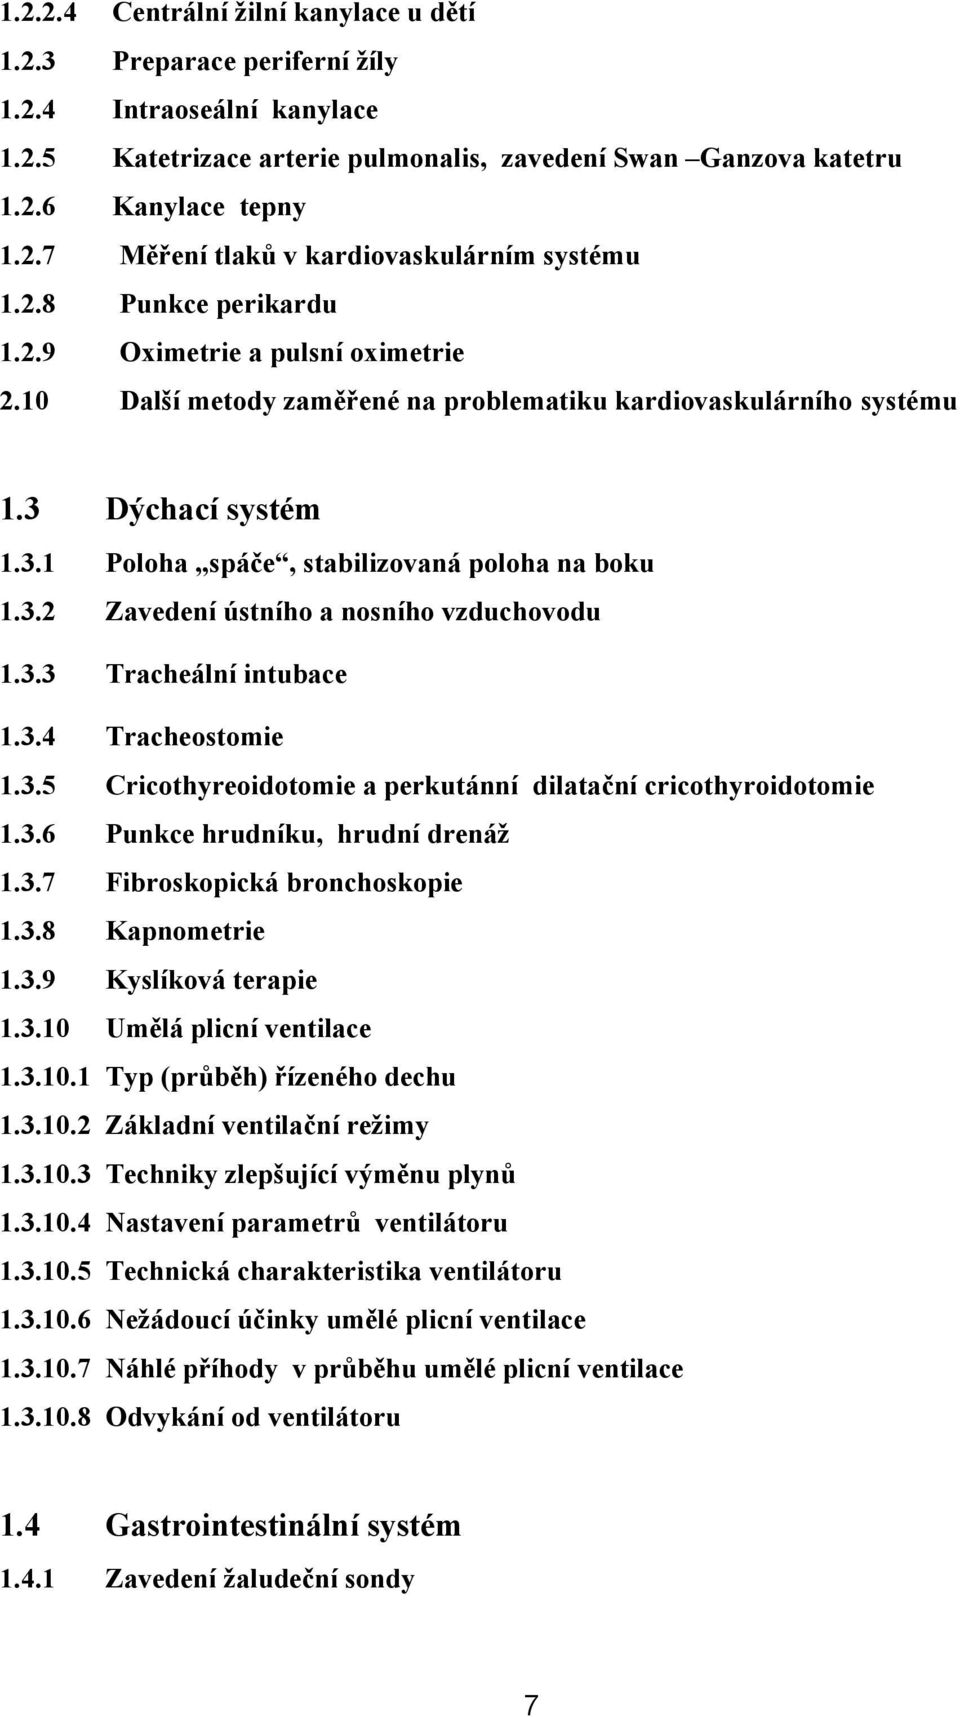 3.3 Tracheální intubace 1.3.4 Tracheostomie 1.3.5 Cricothyreoidotomie a perkutánní dilatační cricothyroidotomie 1.3.6 Punkce hrudníku, hrudní drenáž 1.3.7 Fibroskopická bronchoskopie 1.3.8 Kapnometrie 1.